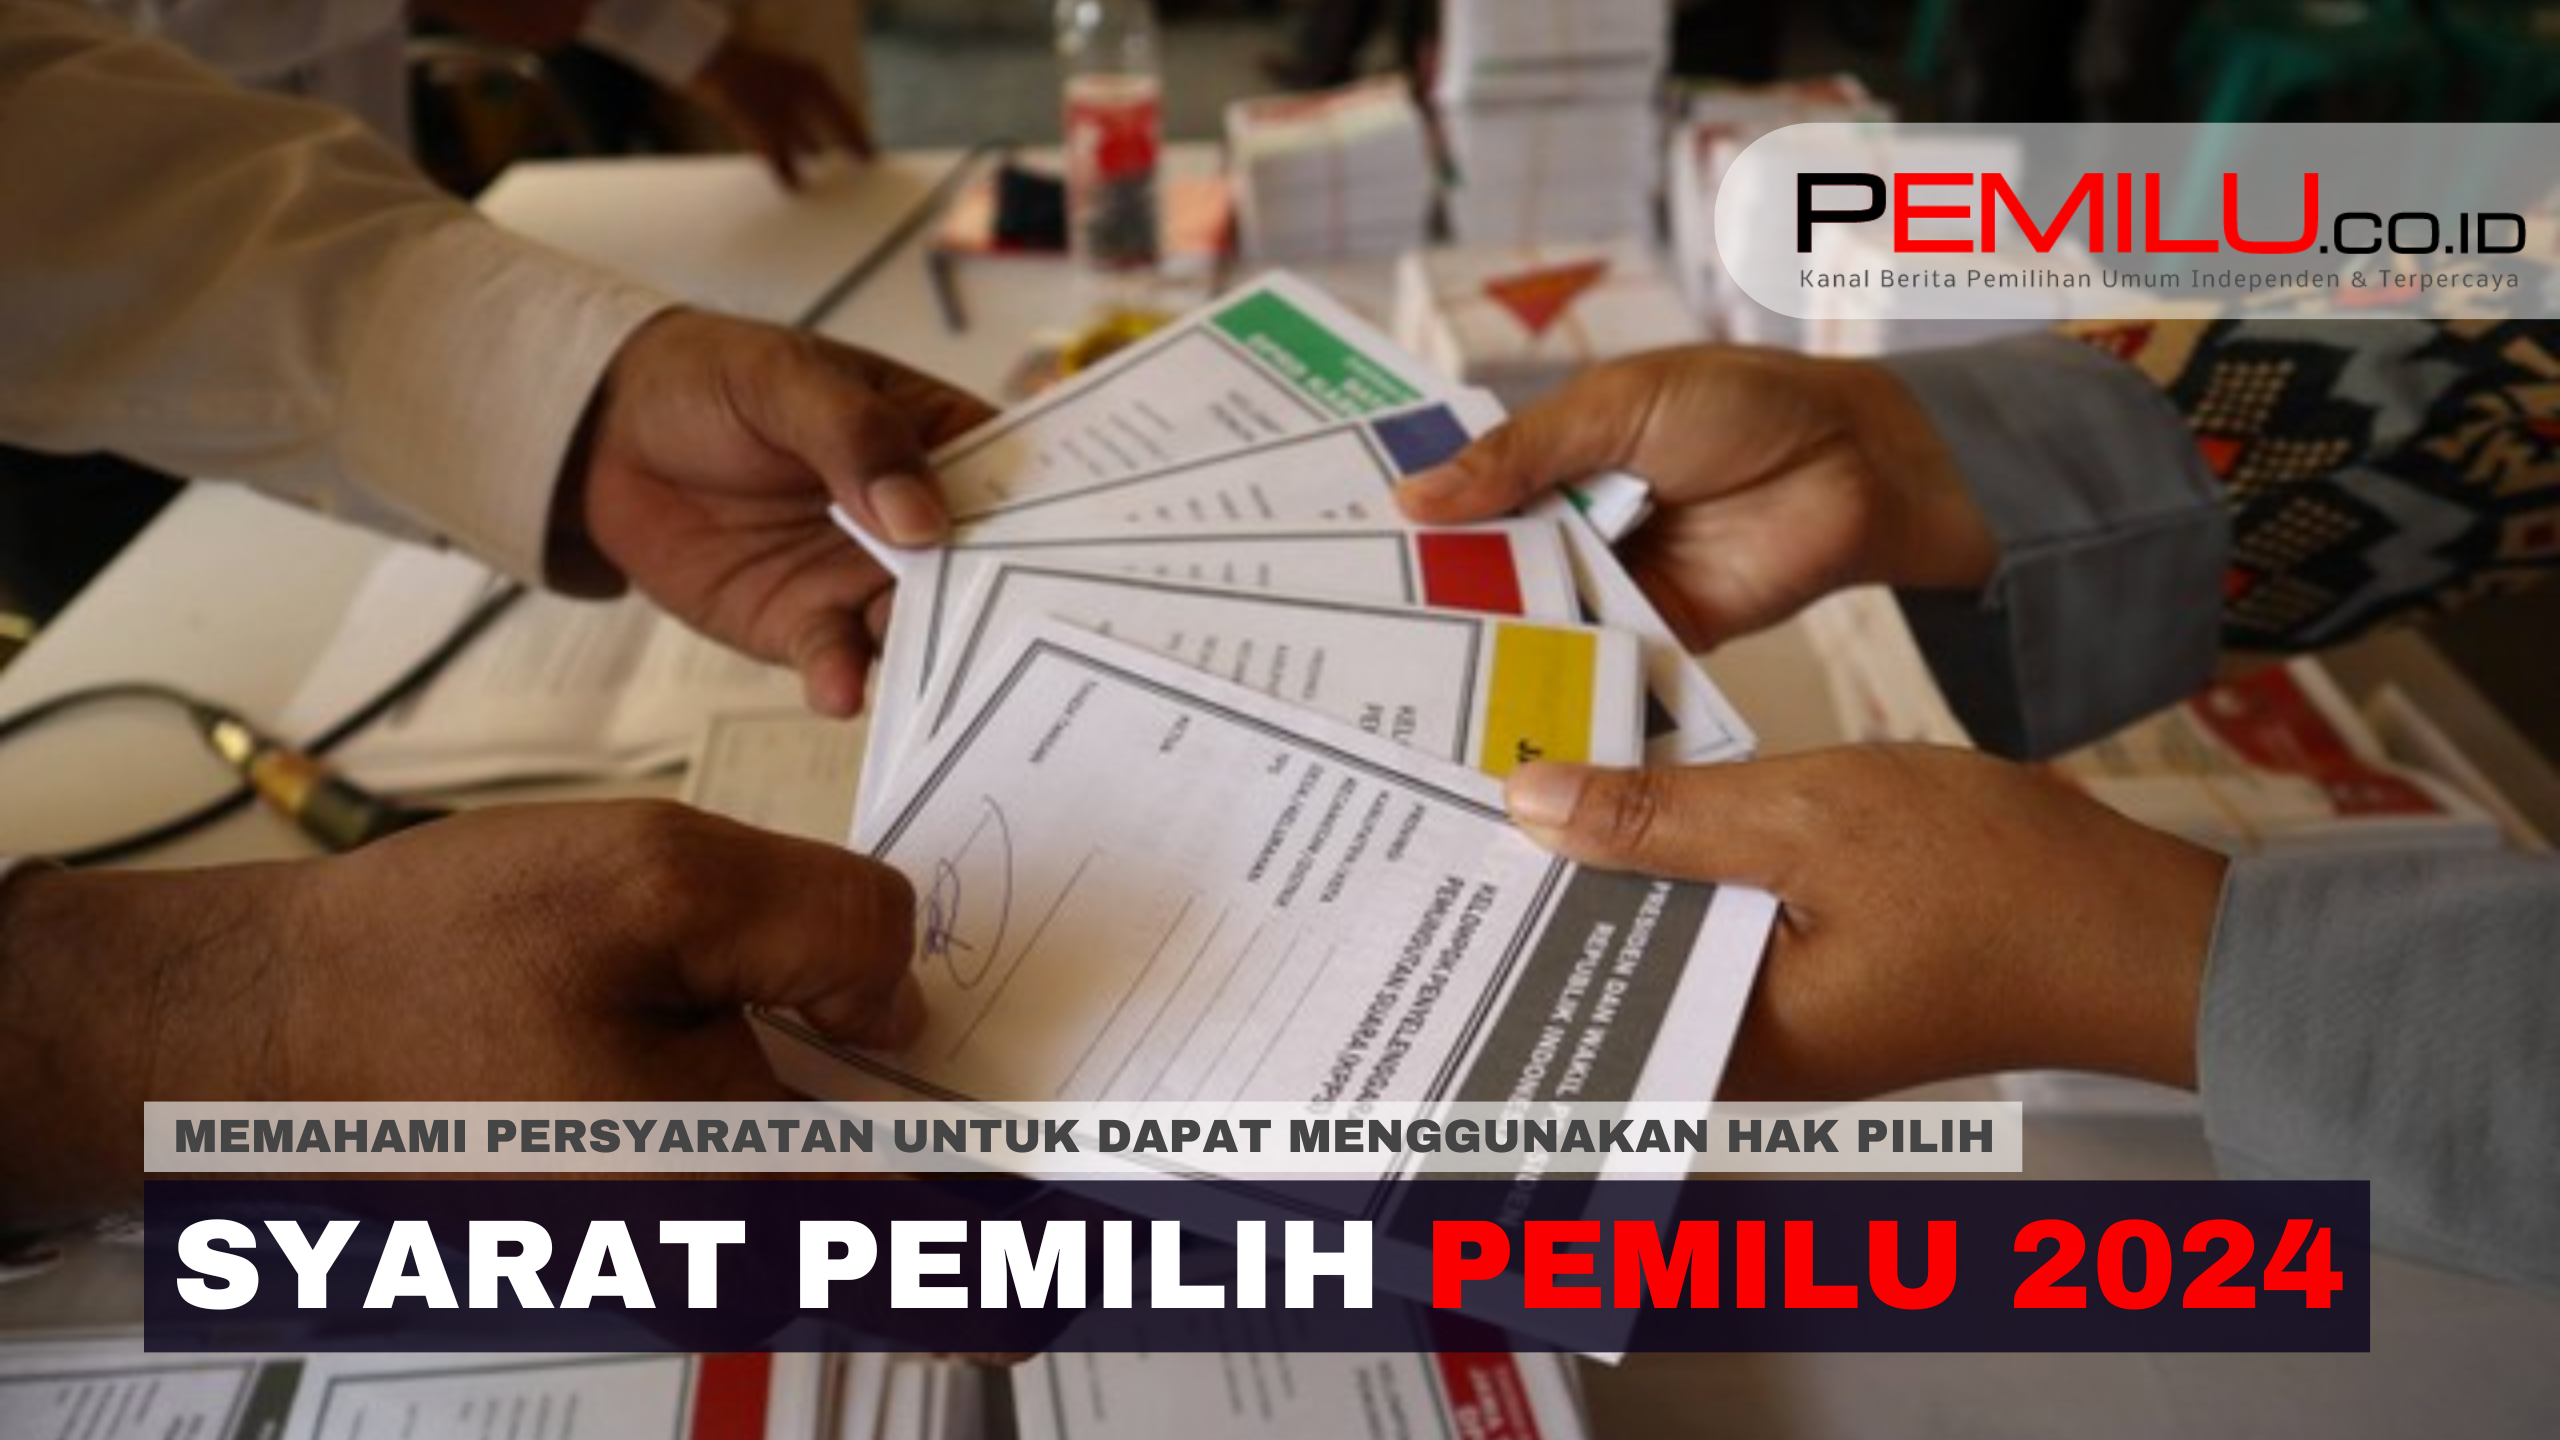 Syarat Pemilih Pemilu 2024 - Featured